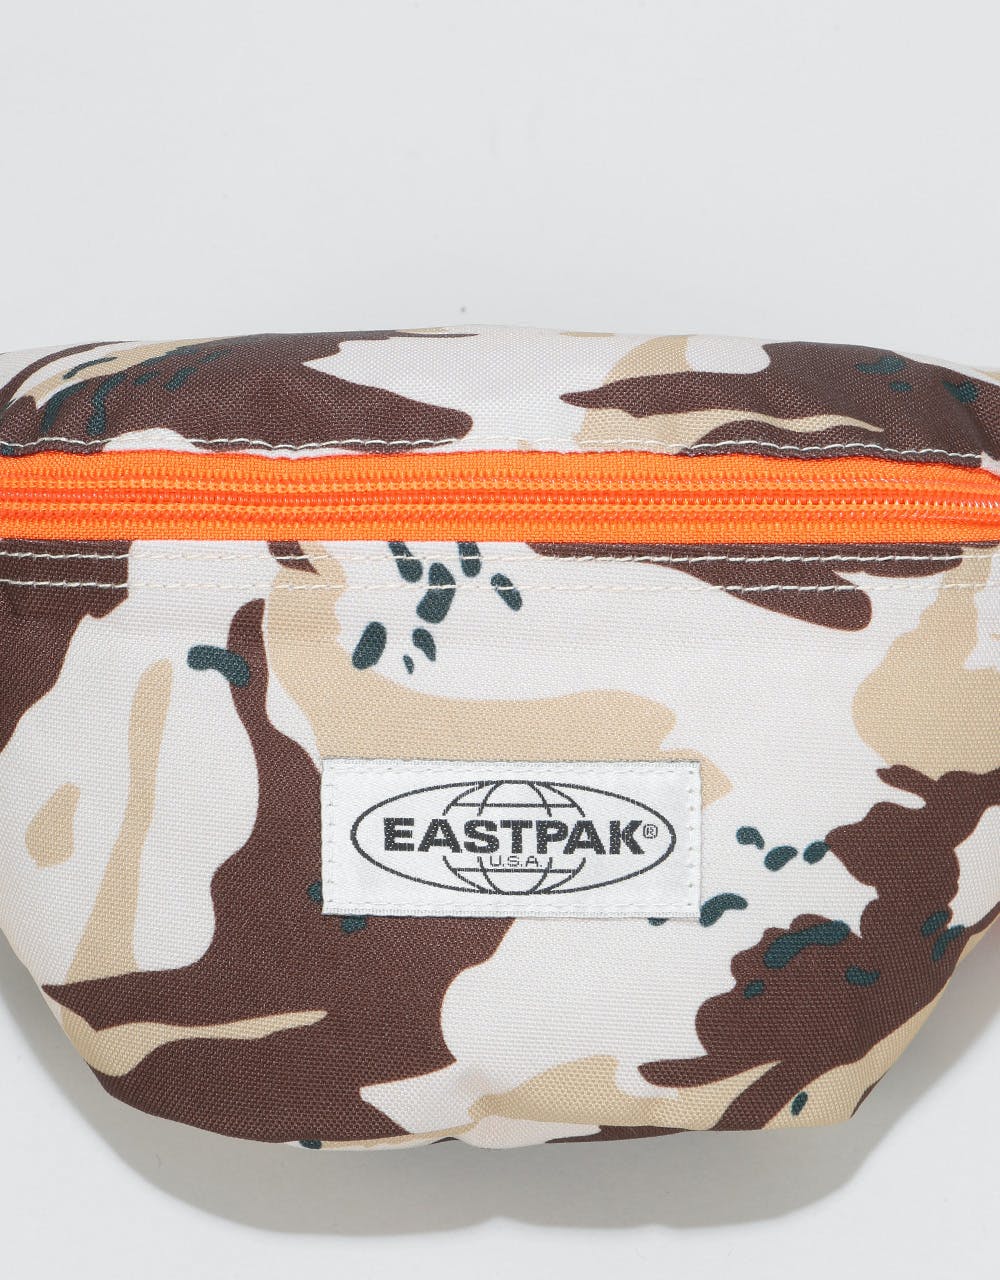 Eastpak Springer Cross Body Bag - Camo'Ed Desert